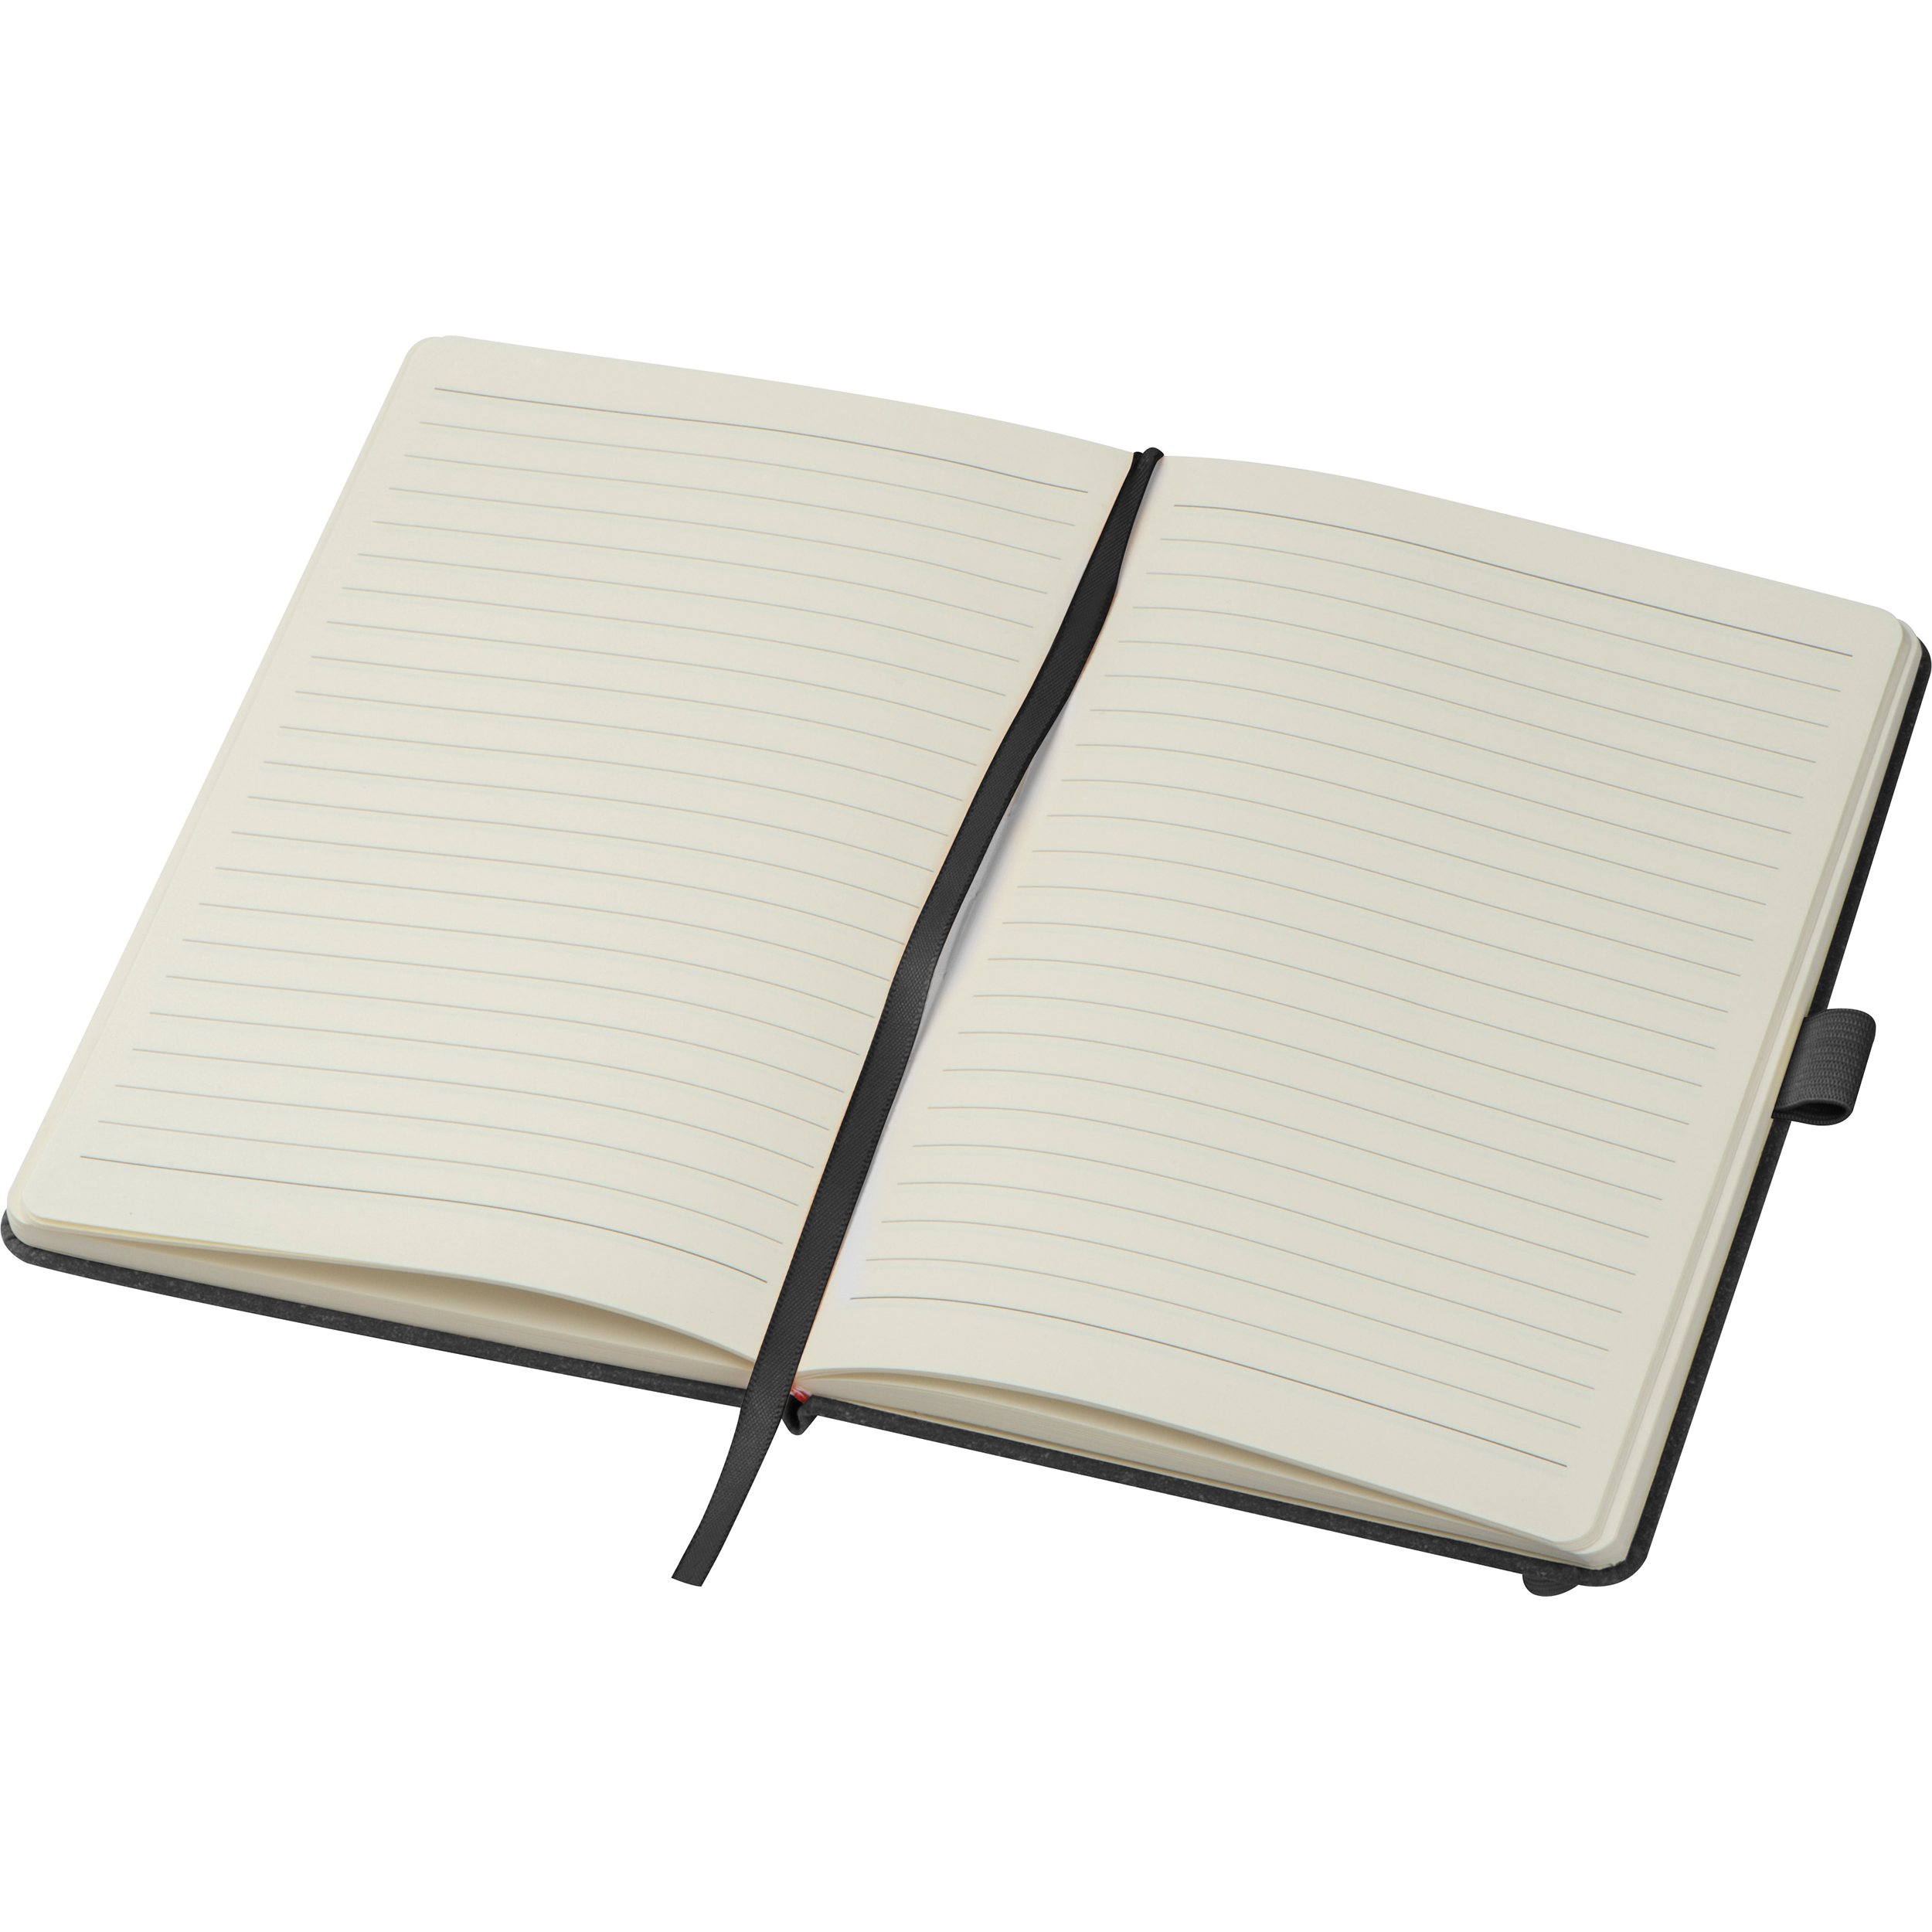 Cuaderno A5 con cubierta de cuero reciclado